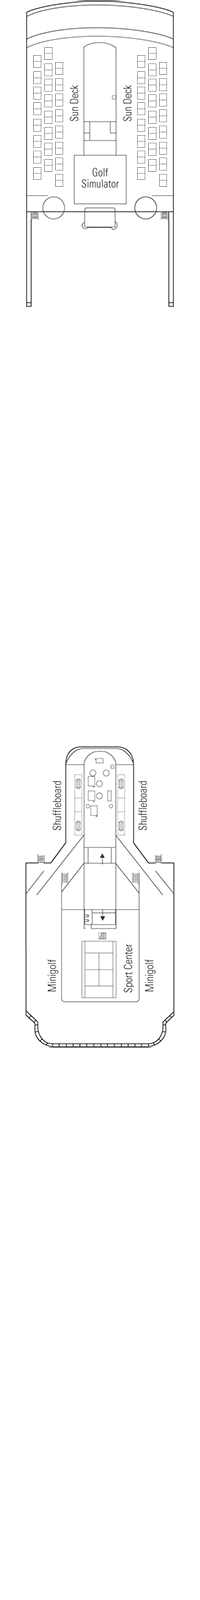 Schubert Deck Deck Plan